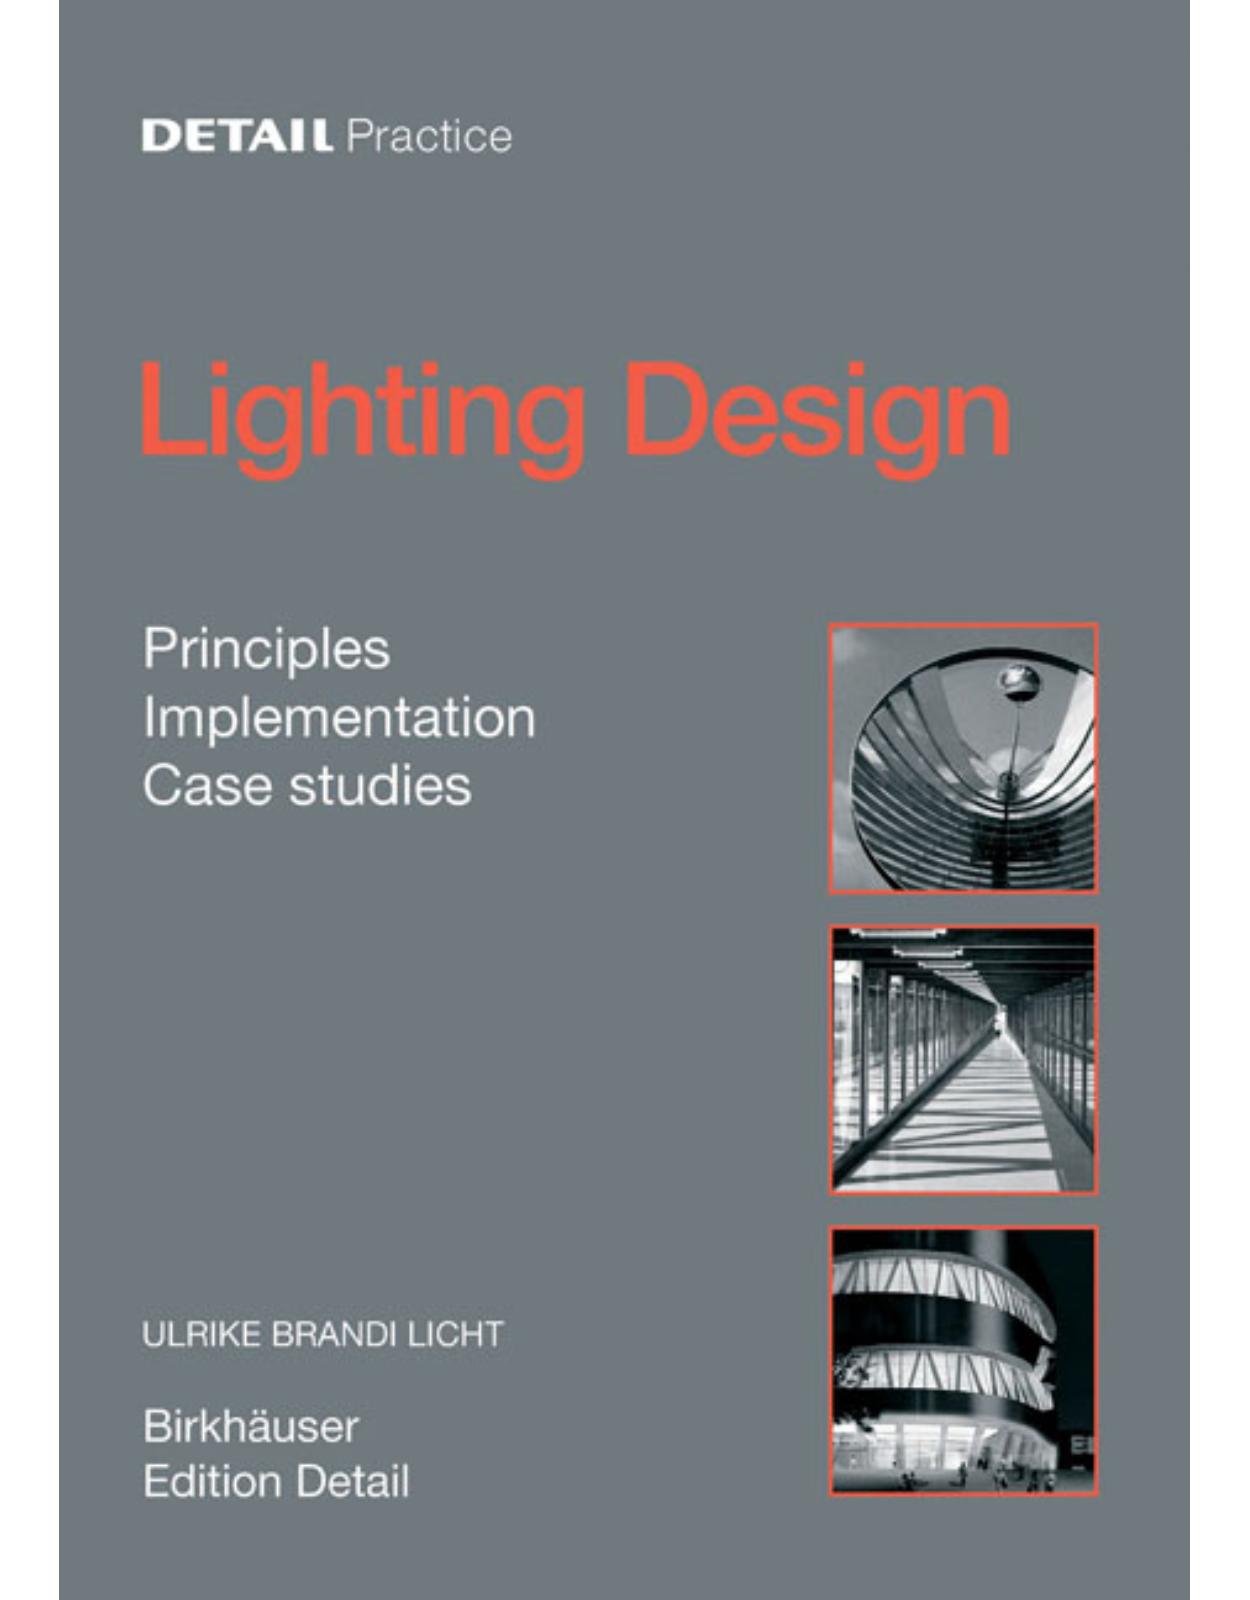 Detail Practice: Lighting Design